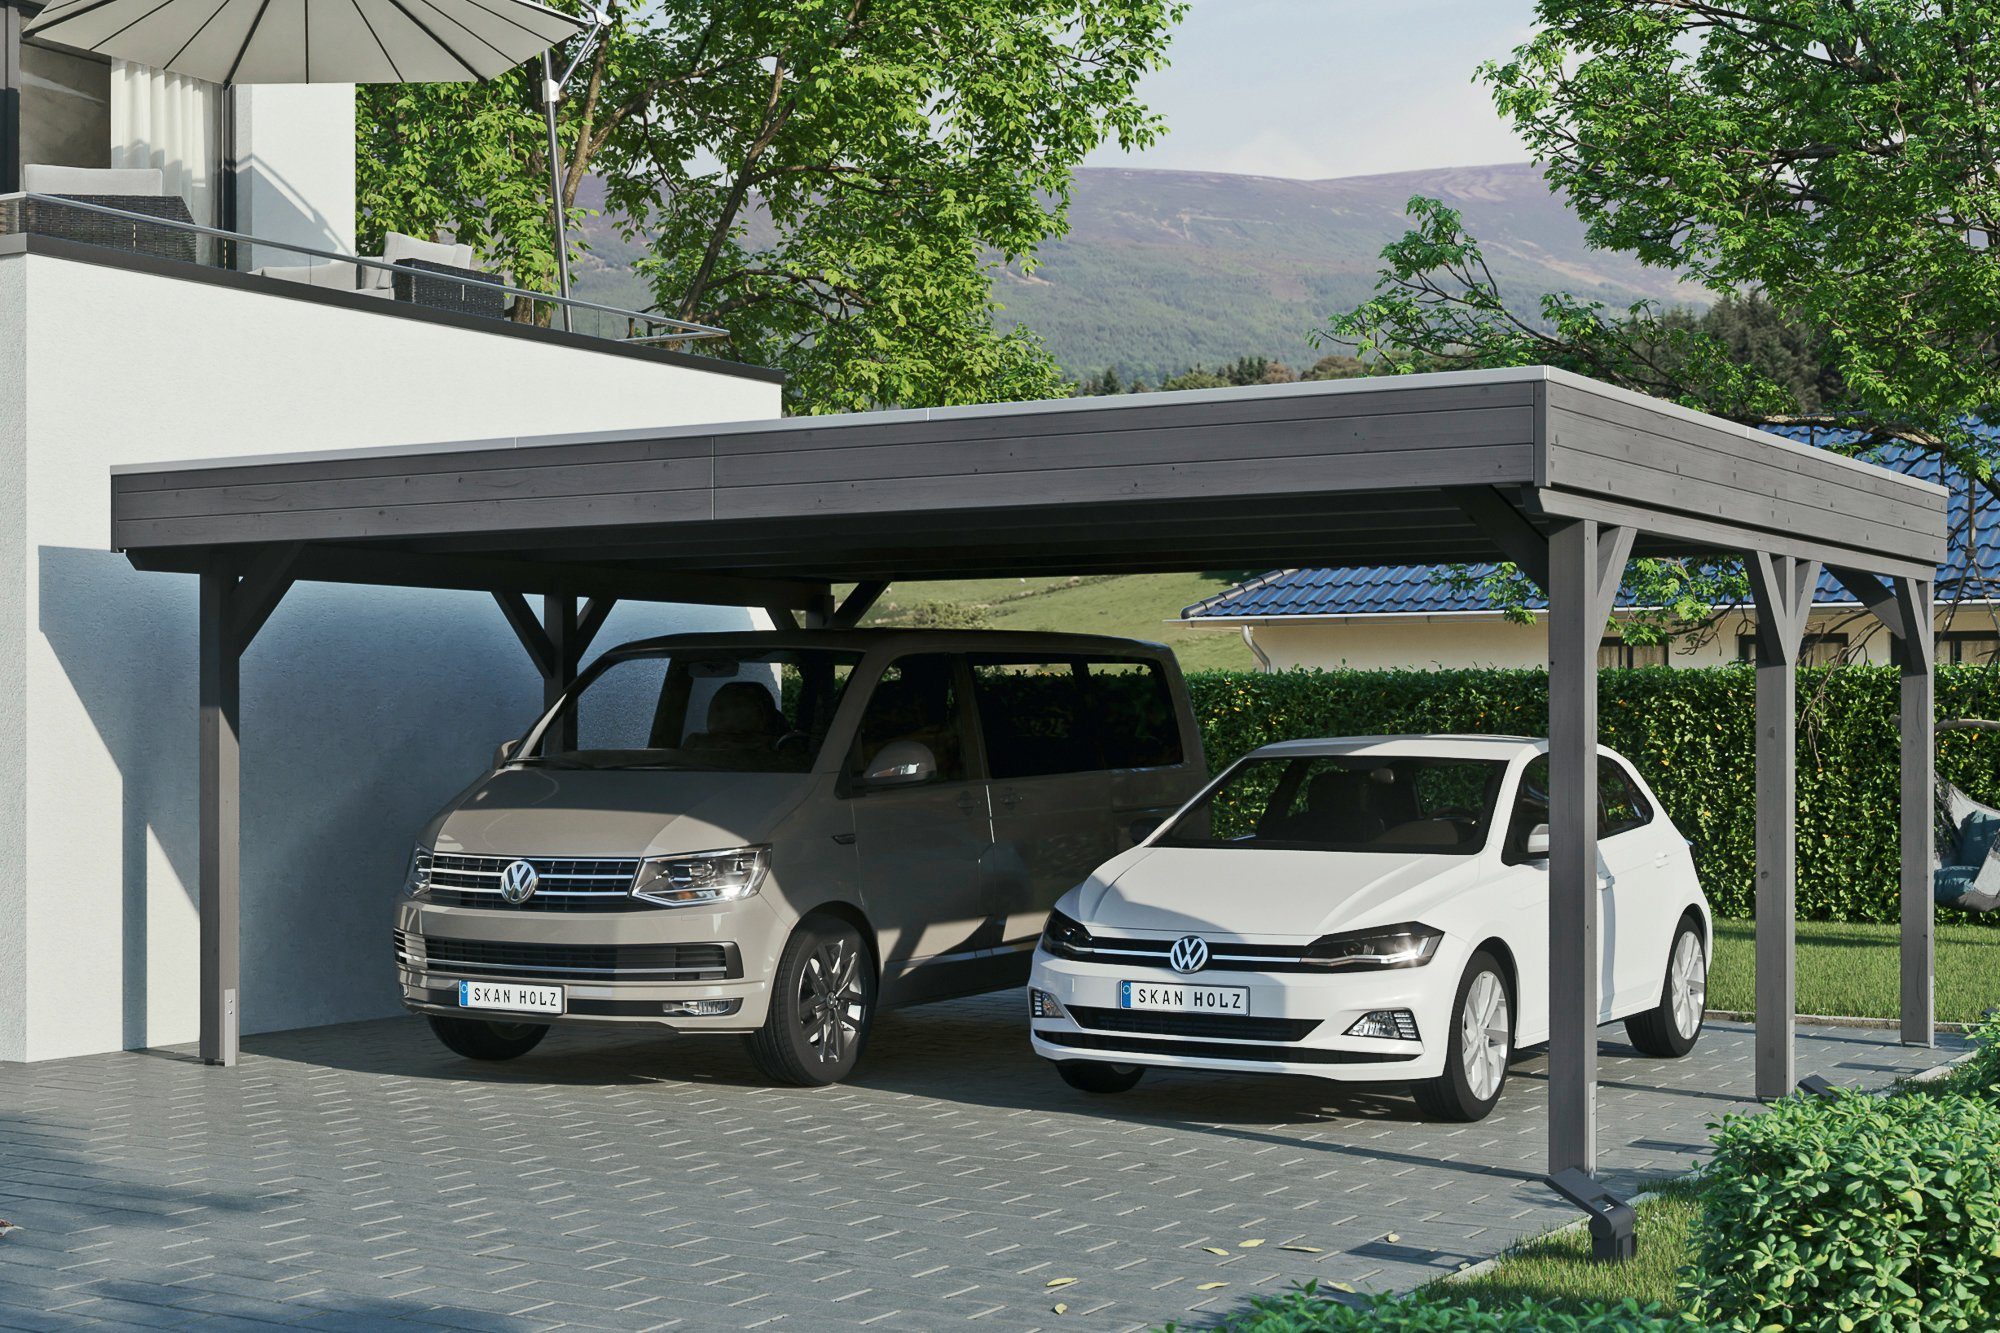 Flachdach-Carport, farblich Skanholz BxT: in Doppelcarport EPDM-Dach, 590 cm, Einfahrtshöhe, Grunewald, cm behandelt mit schiefergrau 622x554